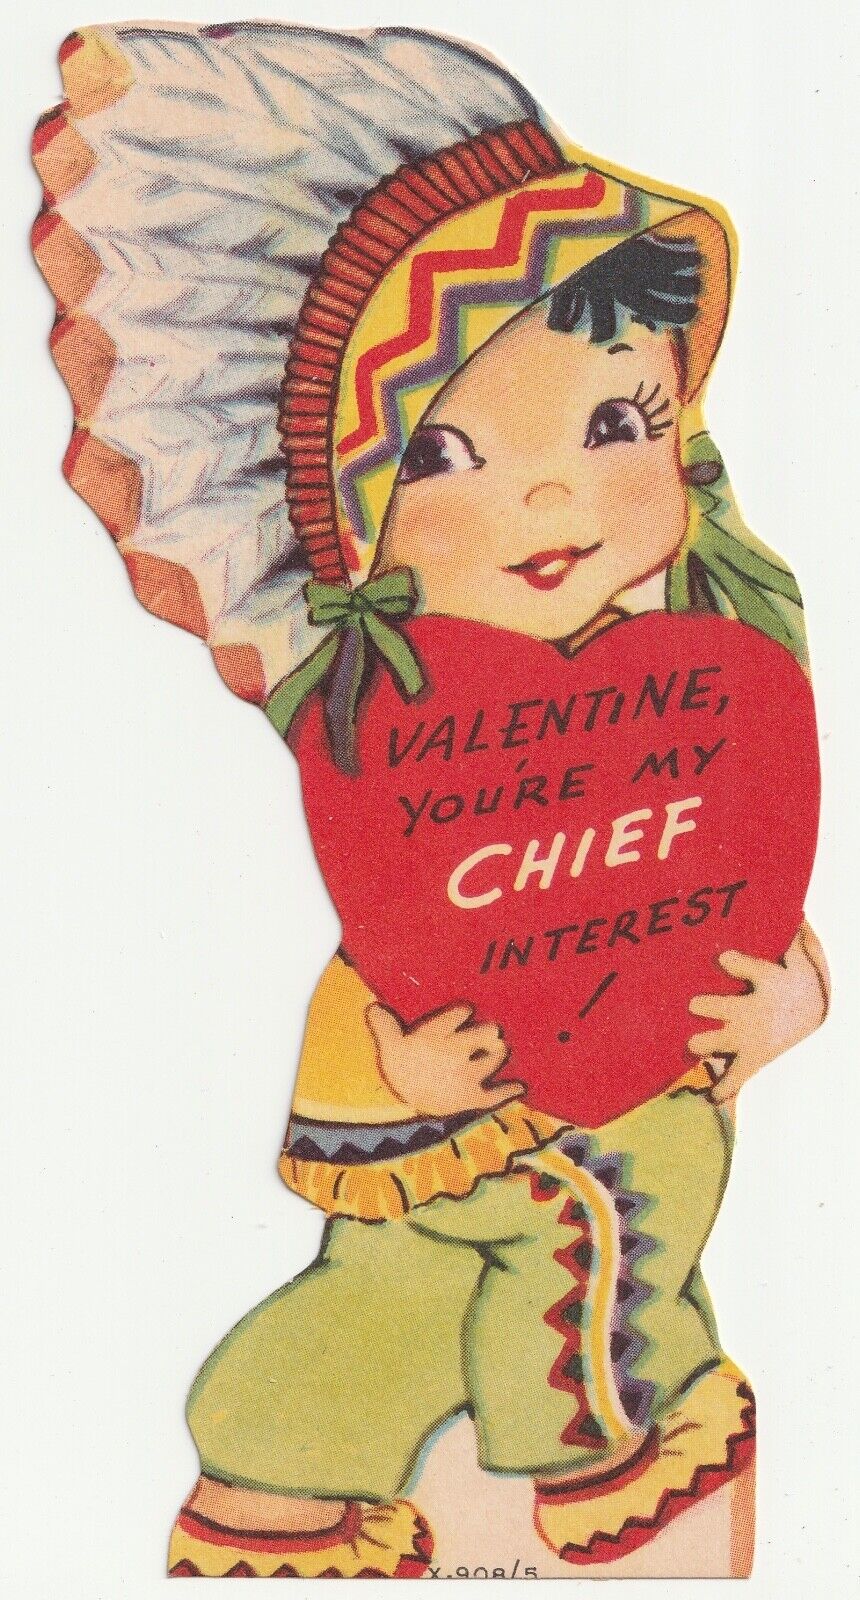 1950s Native American Girl Vintage Valentine Card Die Cut Play On Words MCM